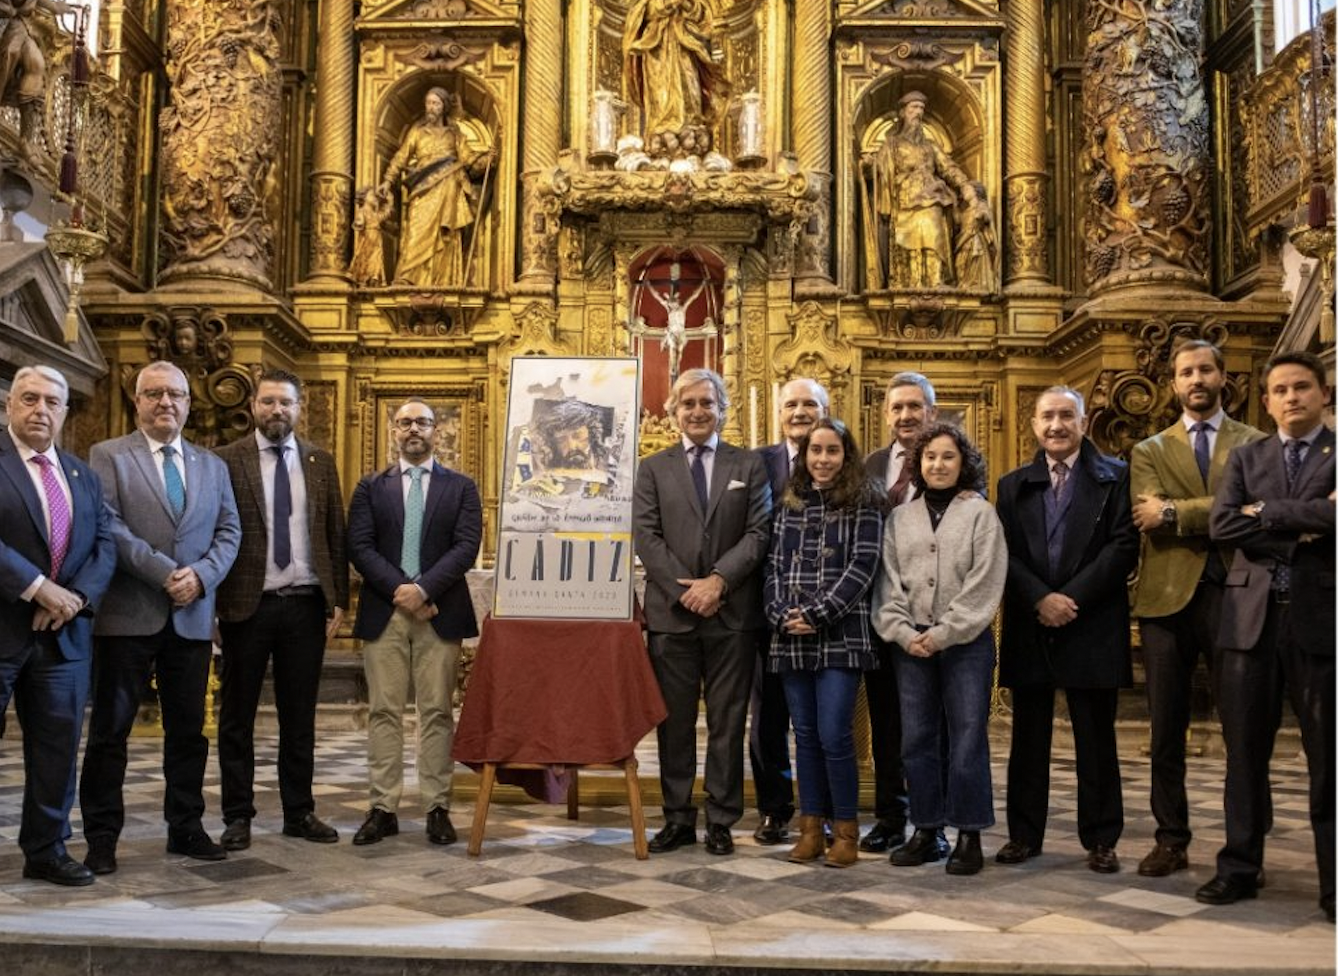 Un trozo de todo Cádiz en su cartel de Semana Santa. En la imagen, las autoridades junto al cartel escoltado por el pregonero y el autor del cartel.